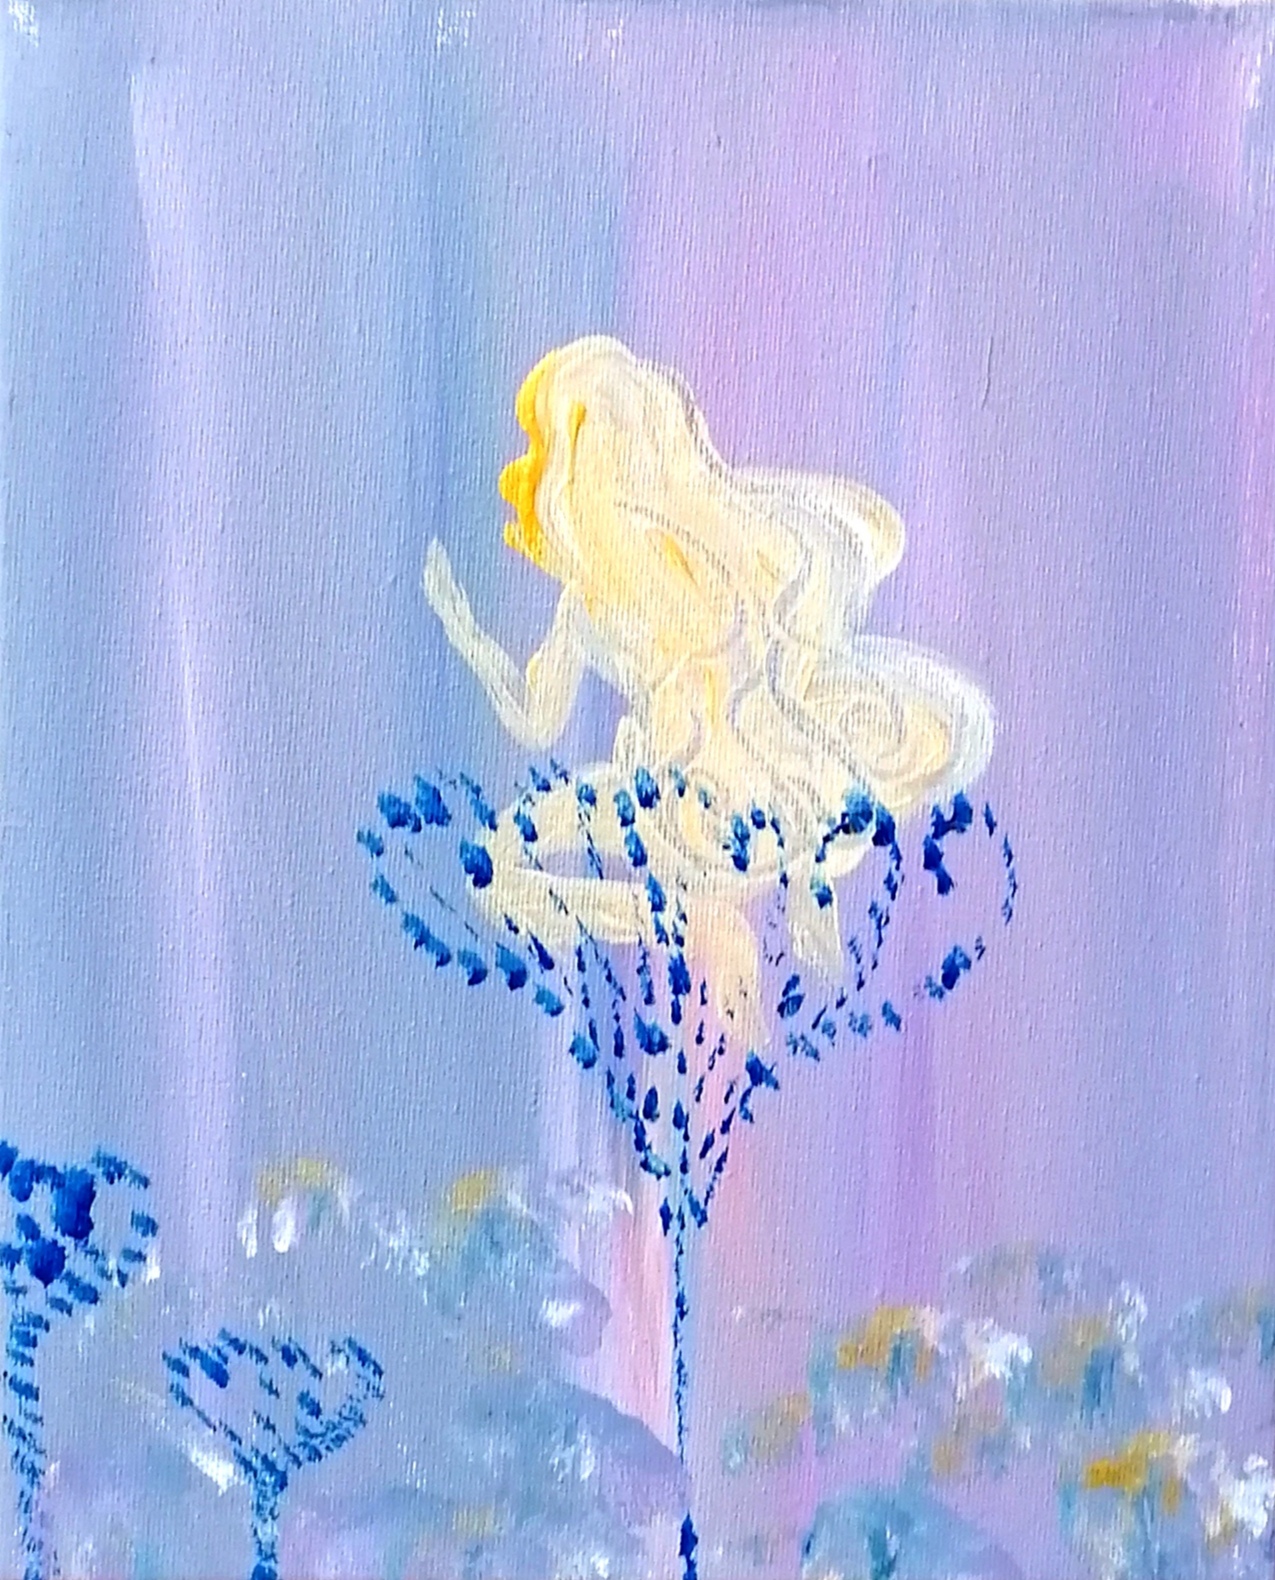 Sirene Nue 裸の人魚姫 現代アート 絵画の通販 販売サイト Thisisgallery ディスイズギャラリー